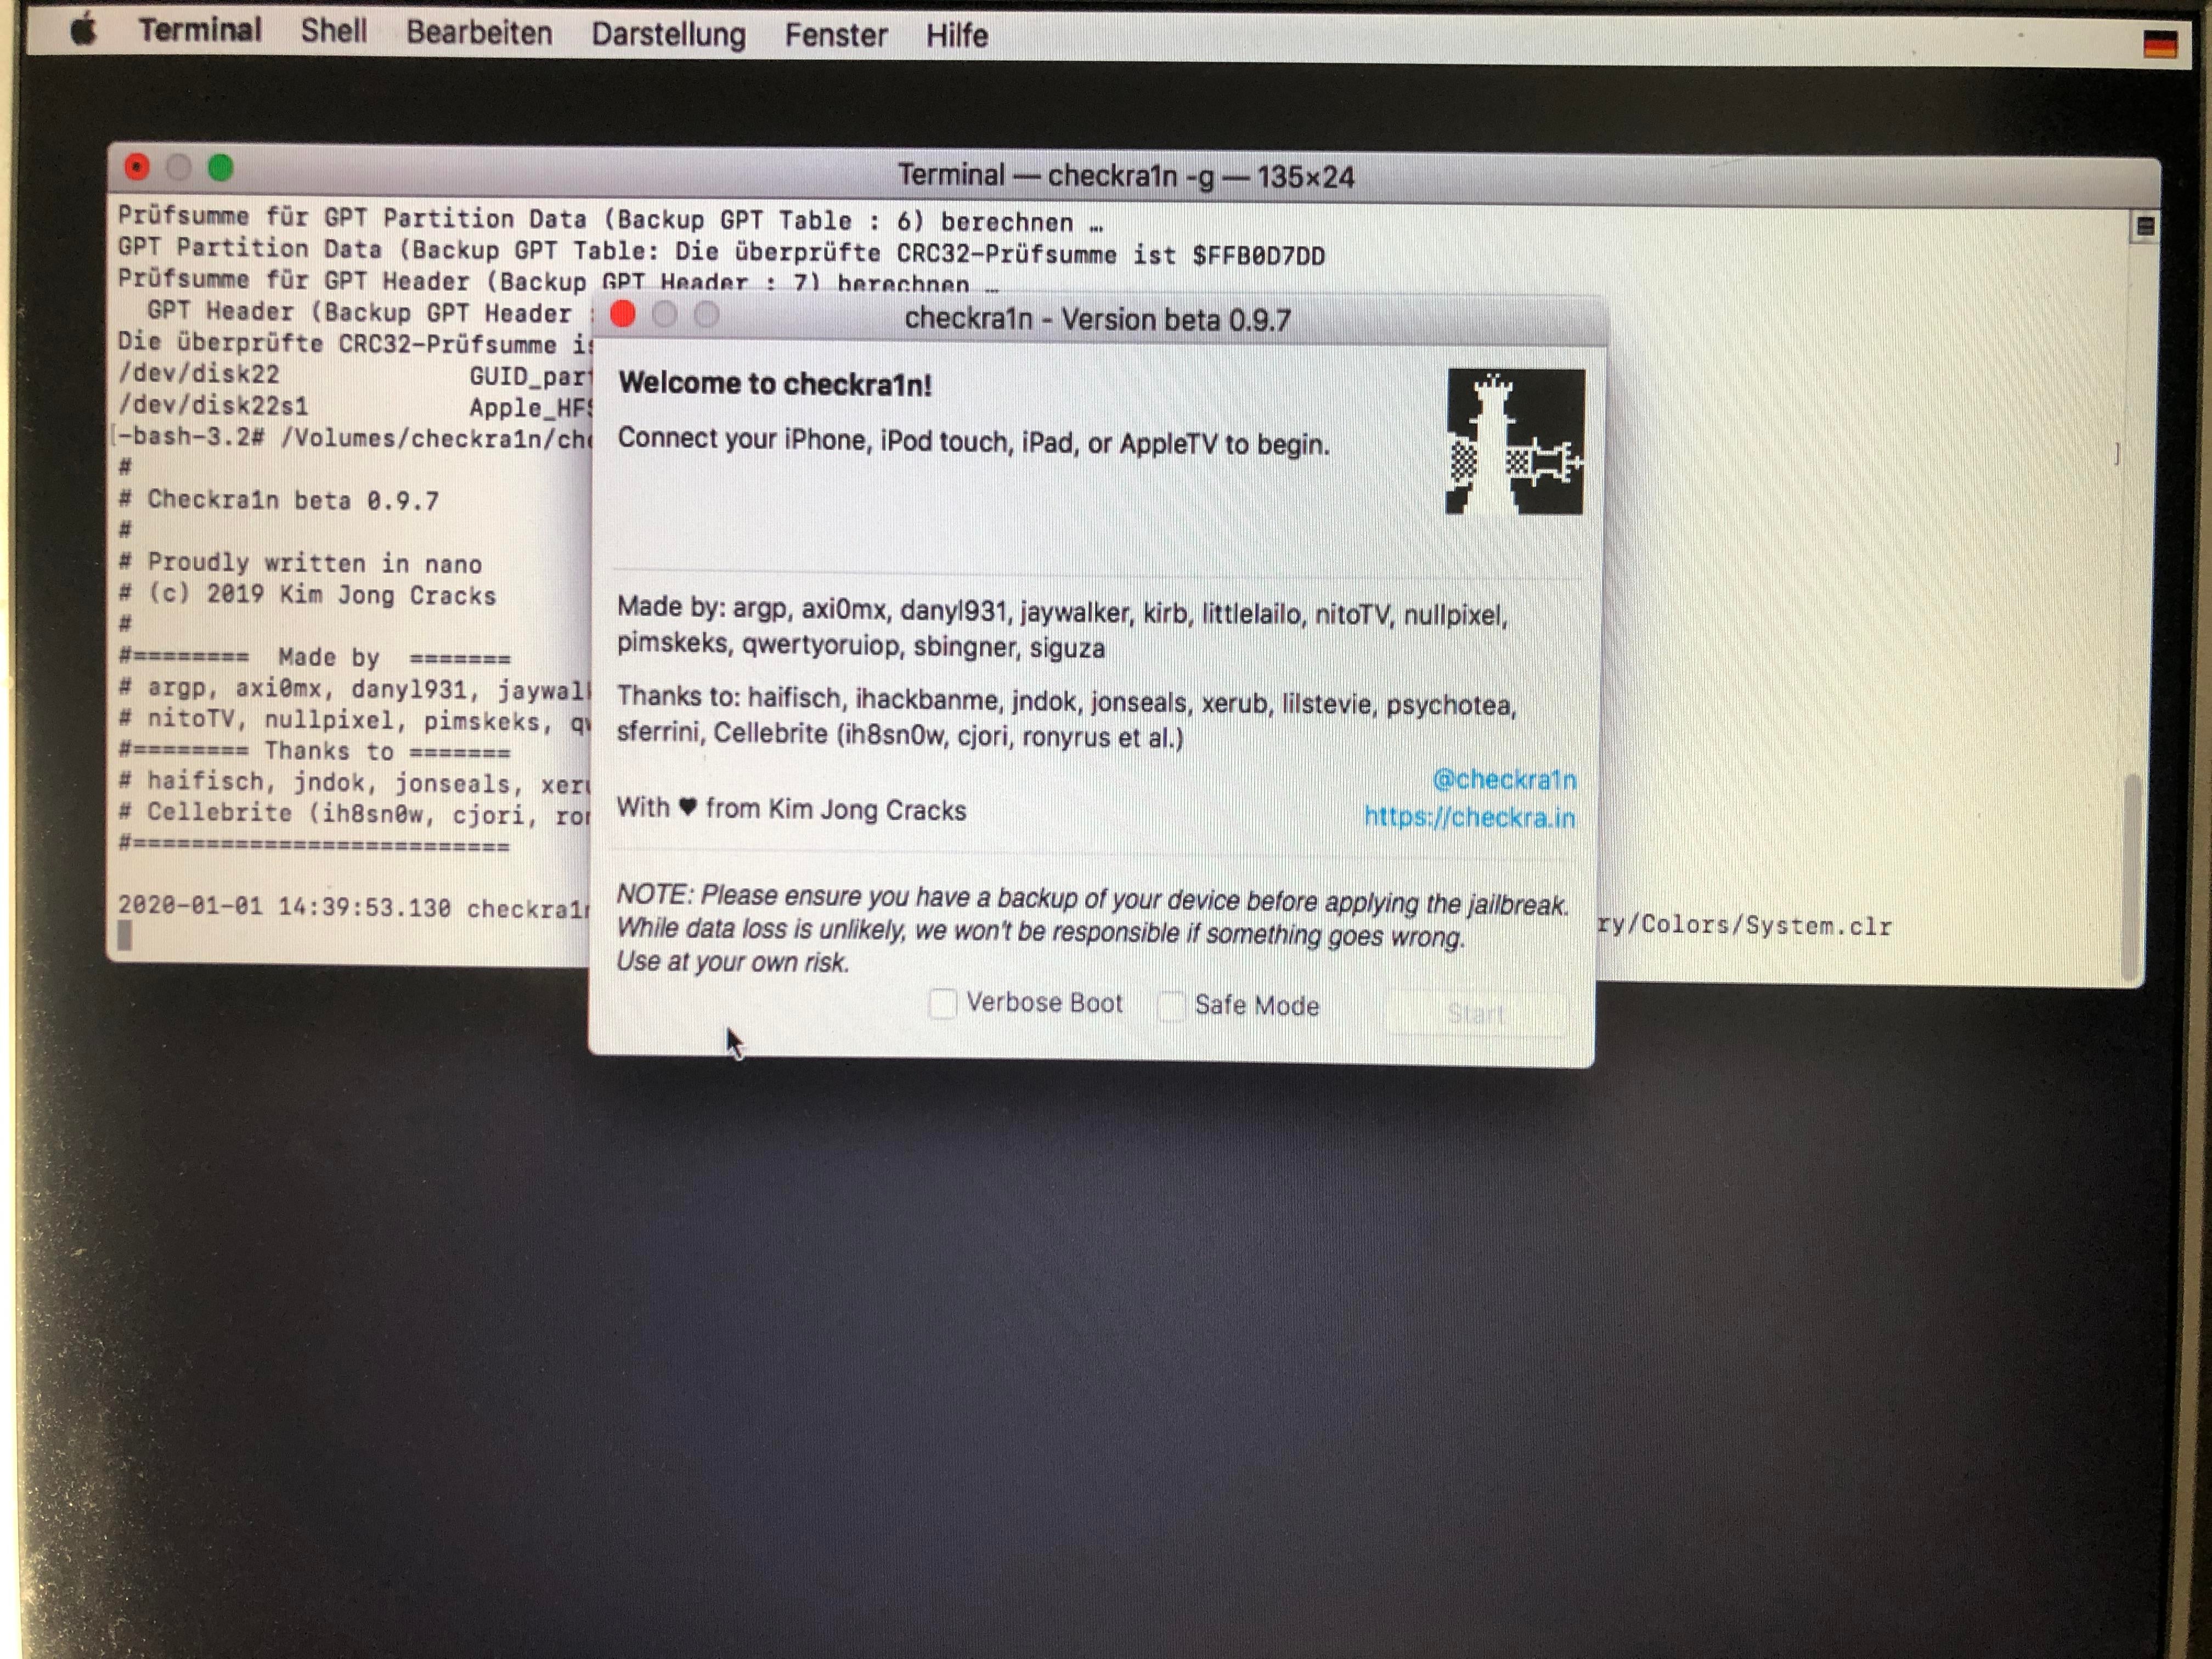 parallels desktop 12 for mac 12.2.1 ubuntu 17.10